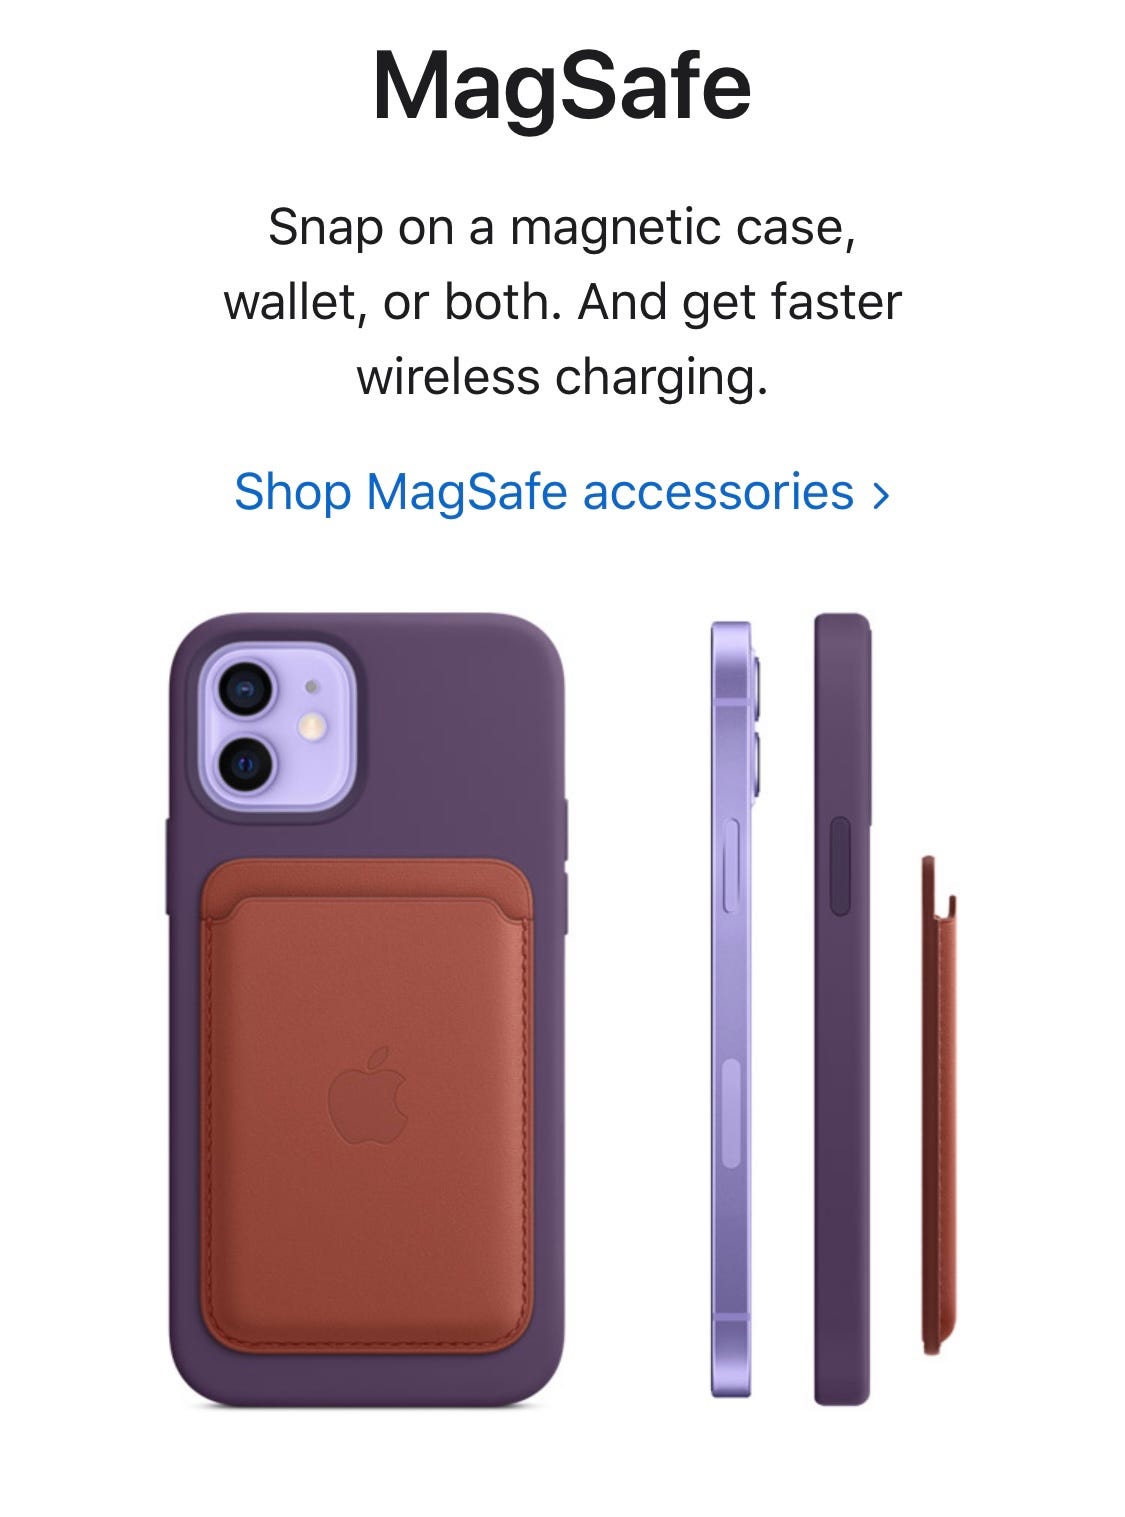 Apple MagSafe Wallet vs Cheap Alternatives 